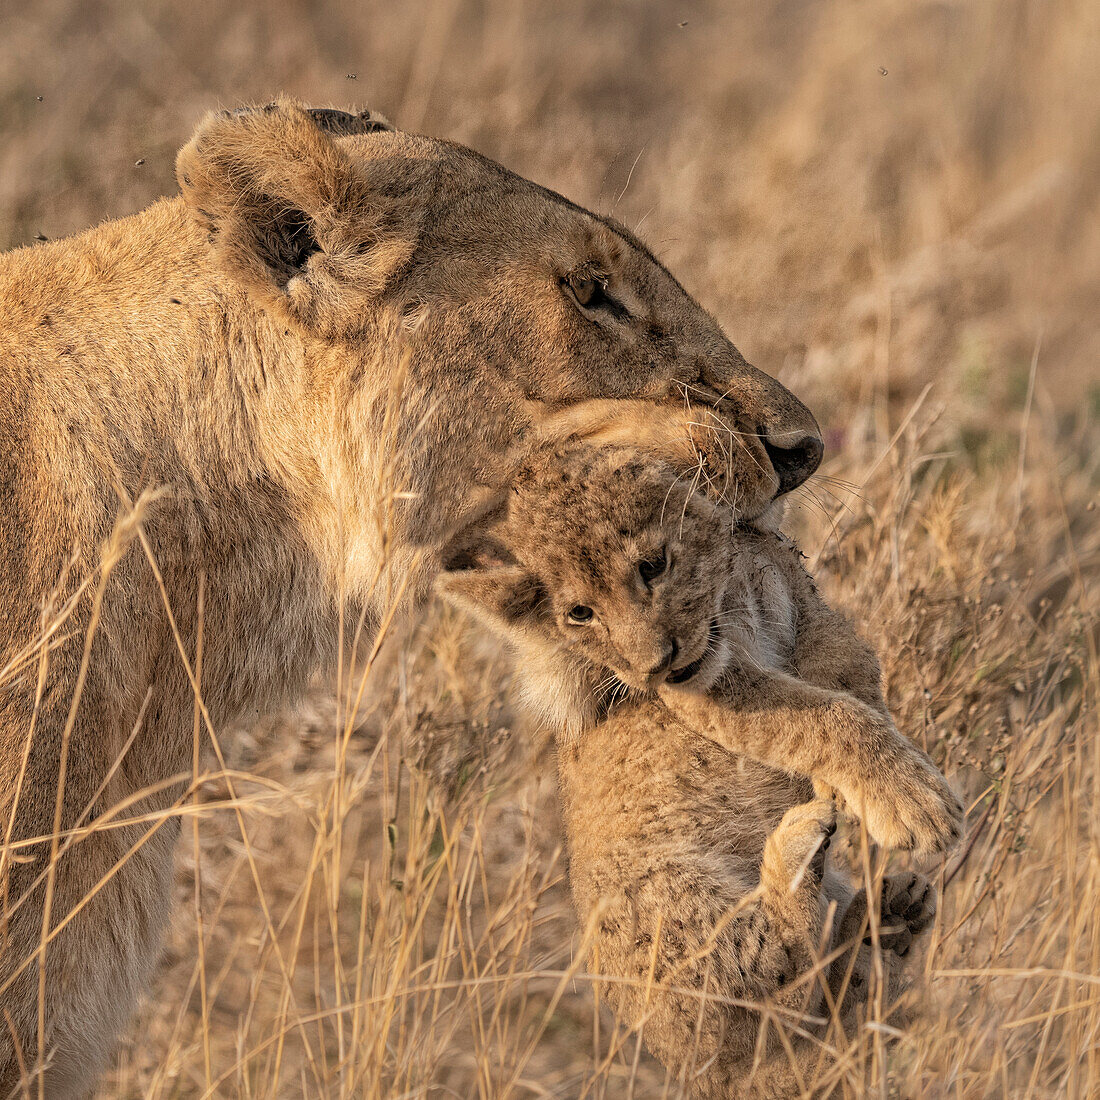 Weibliche Löwin trägt ein Jungtier im Maul, Serengeti, Tansania